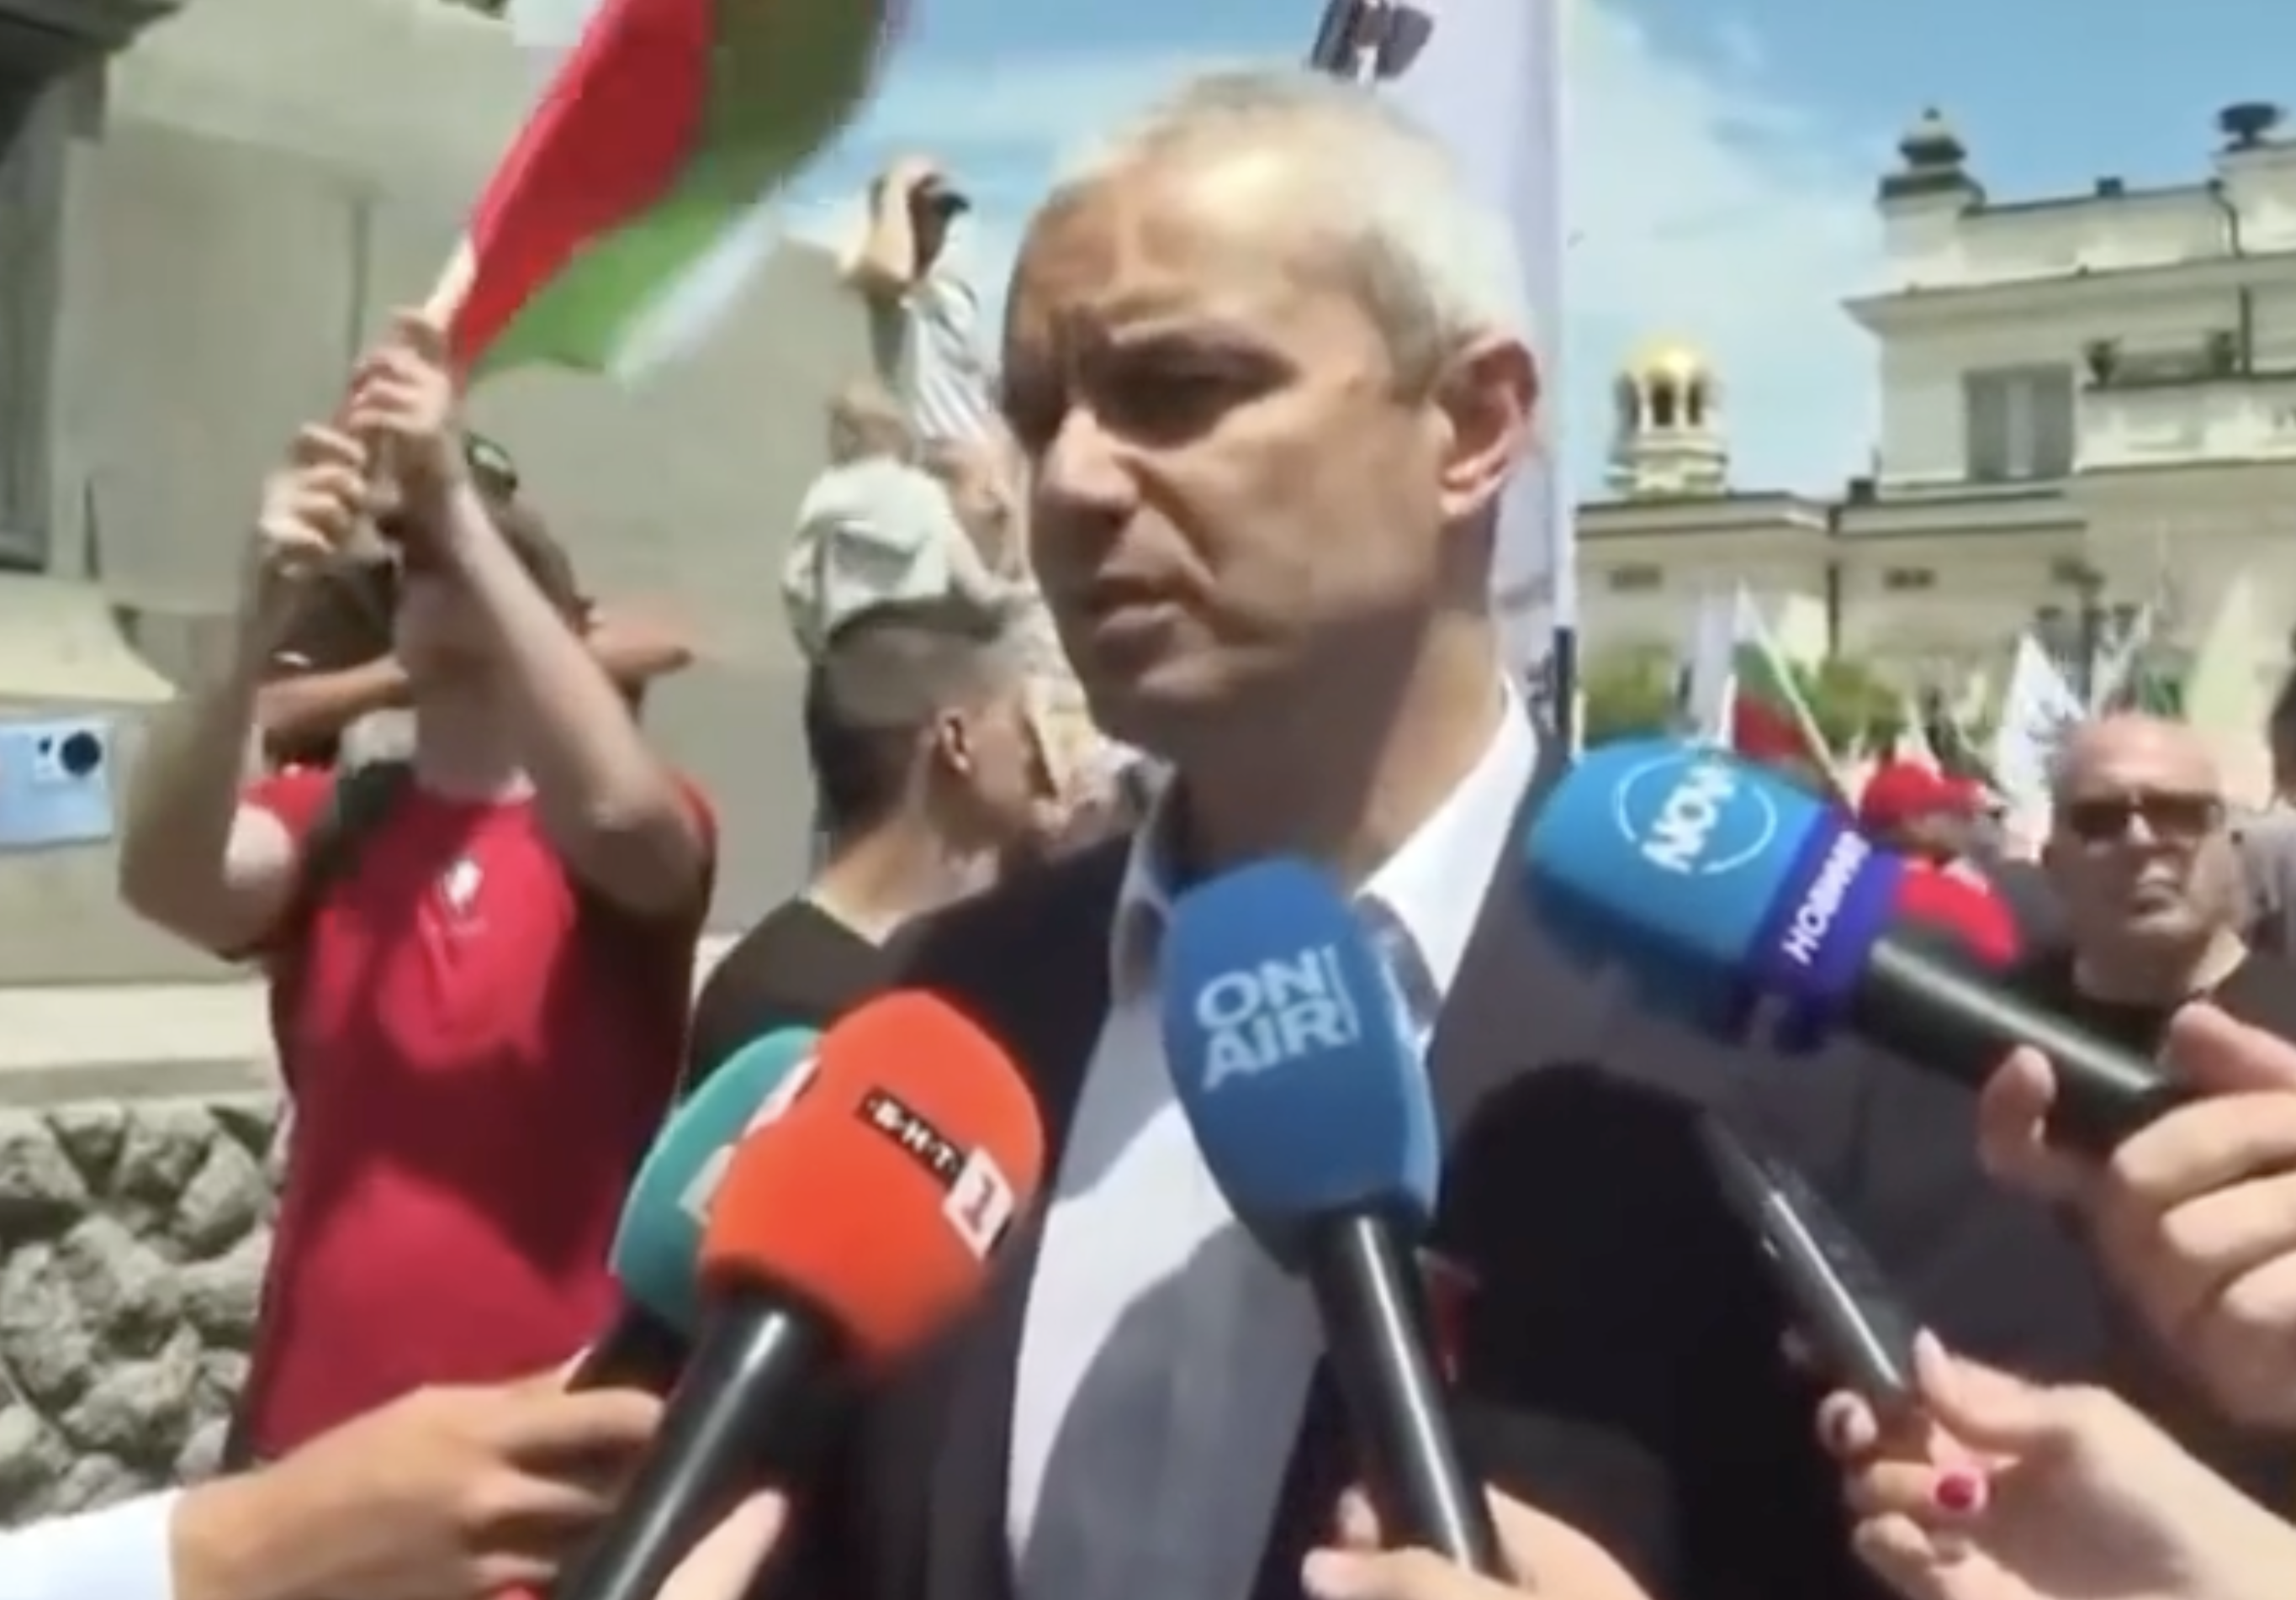 Vazrazhdane leader Kostadin Kostadinov addressing reporters outside the National Assembly